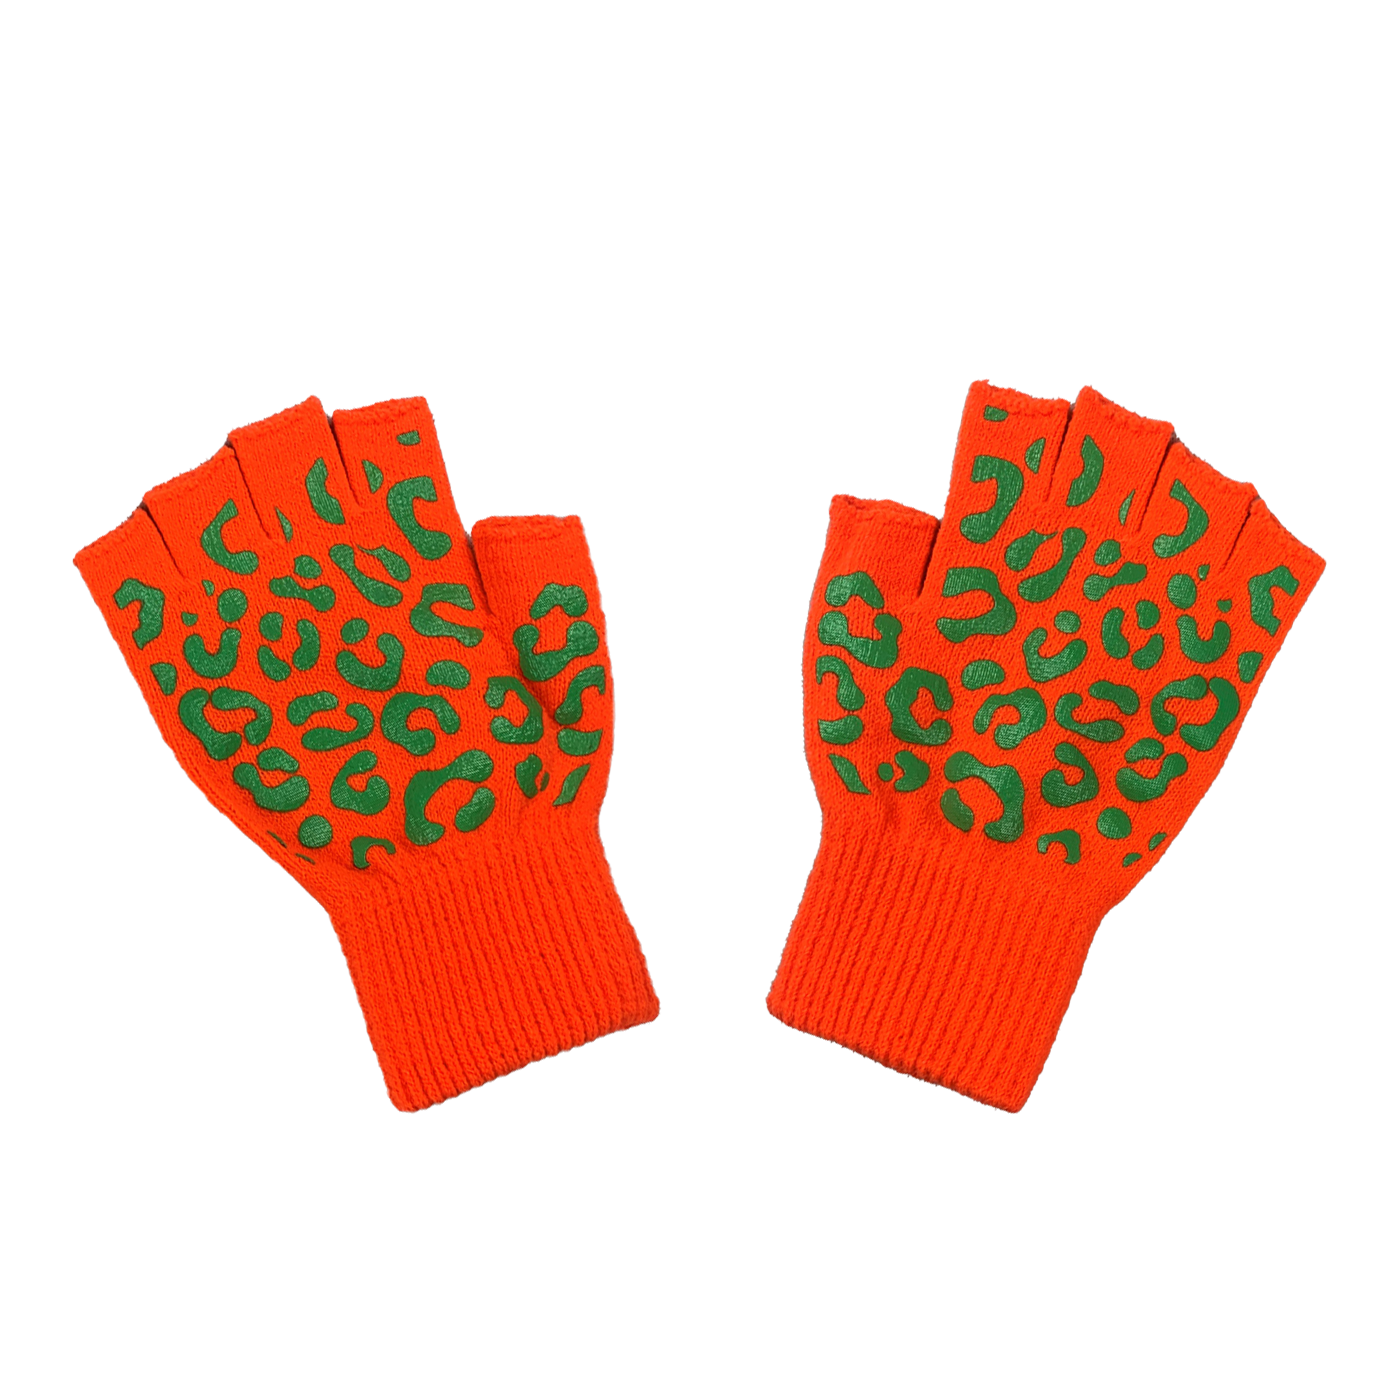 Kruikenstad handschoenen panterprint